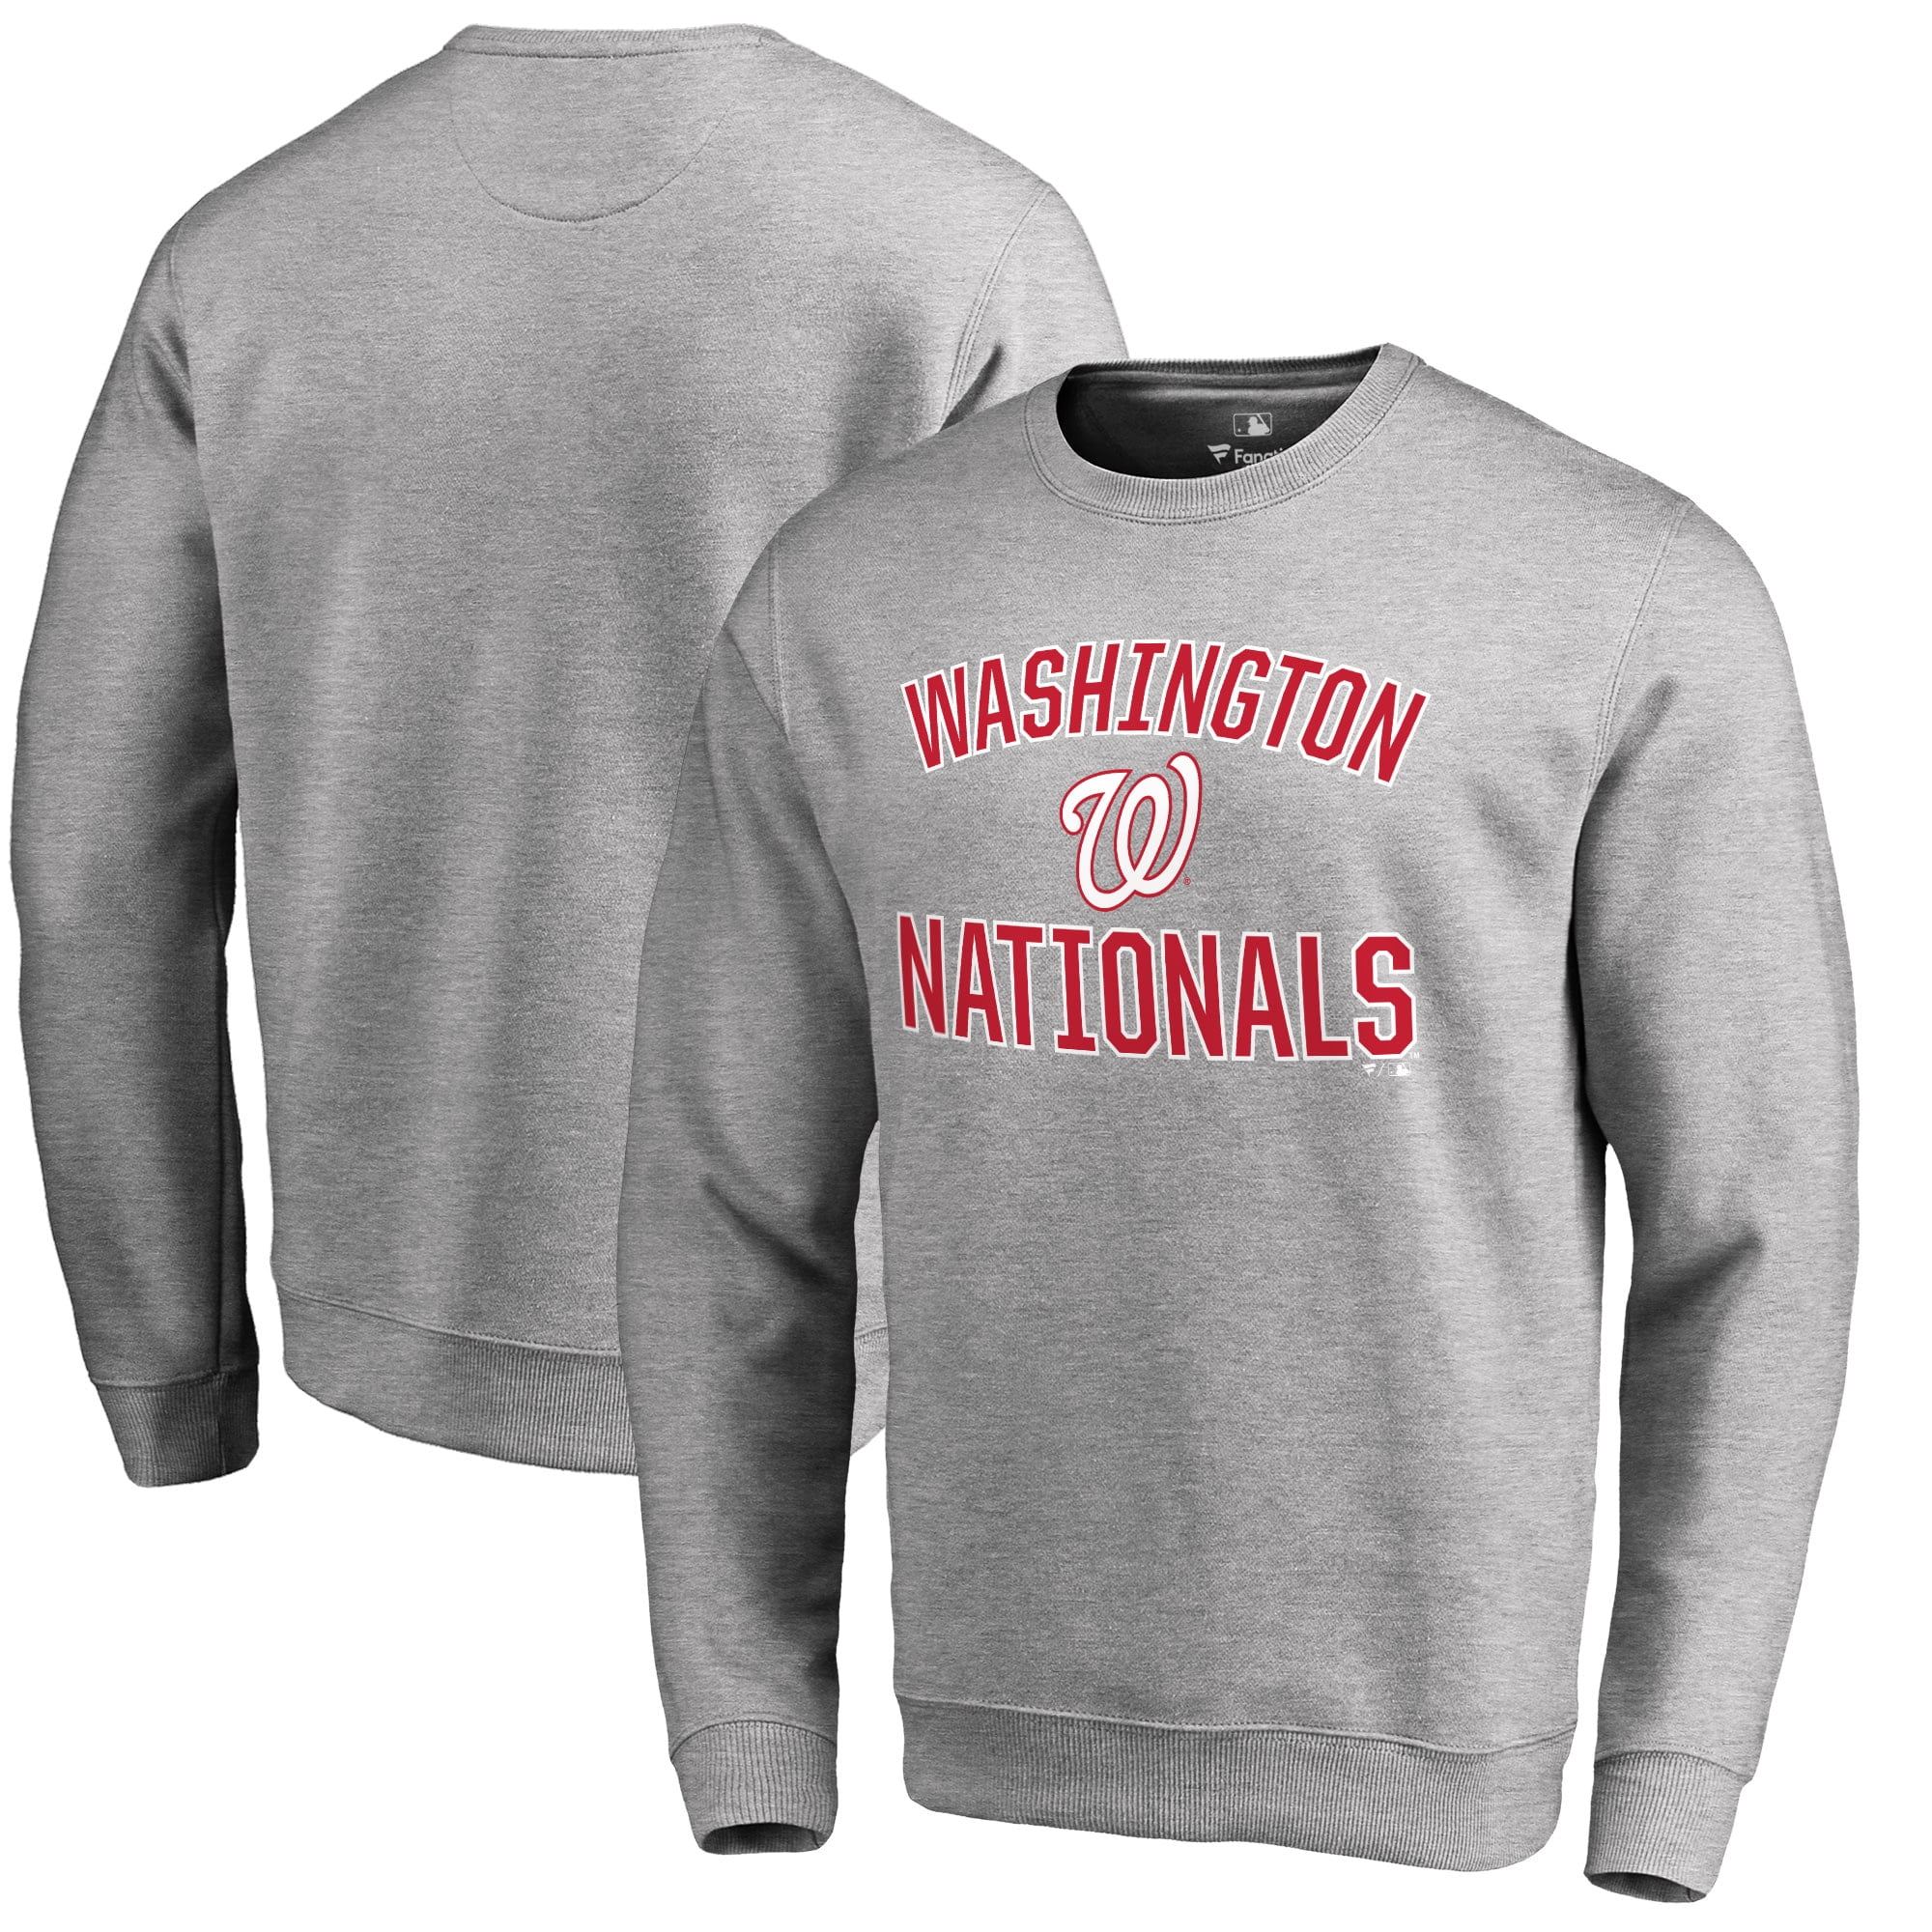 nationals crewneck sweatshirt